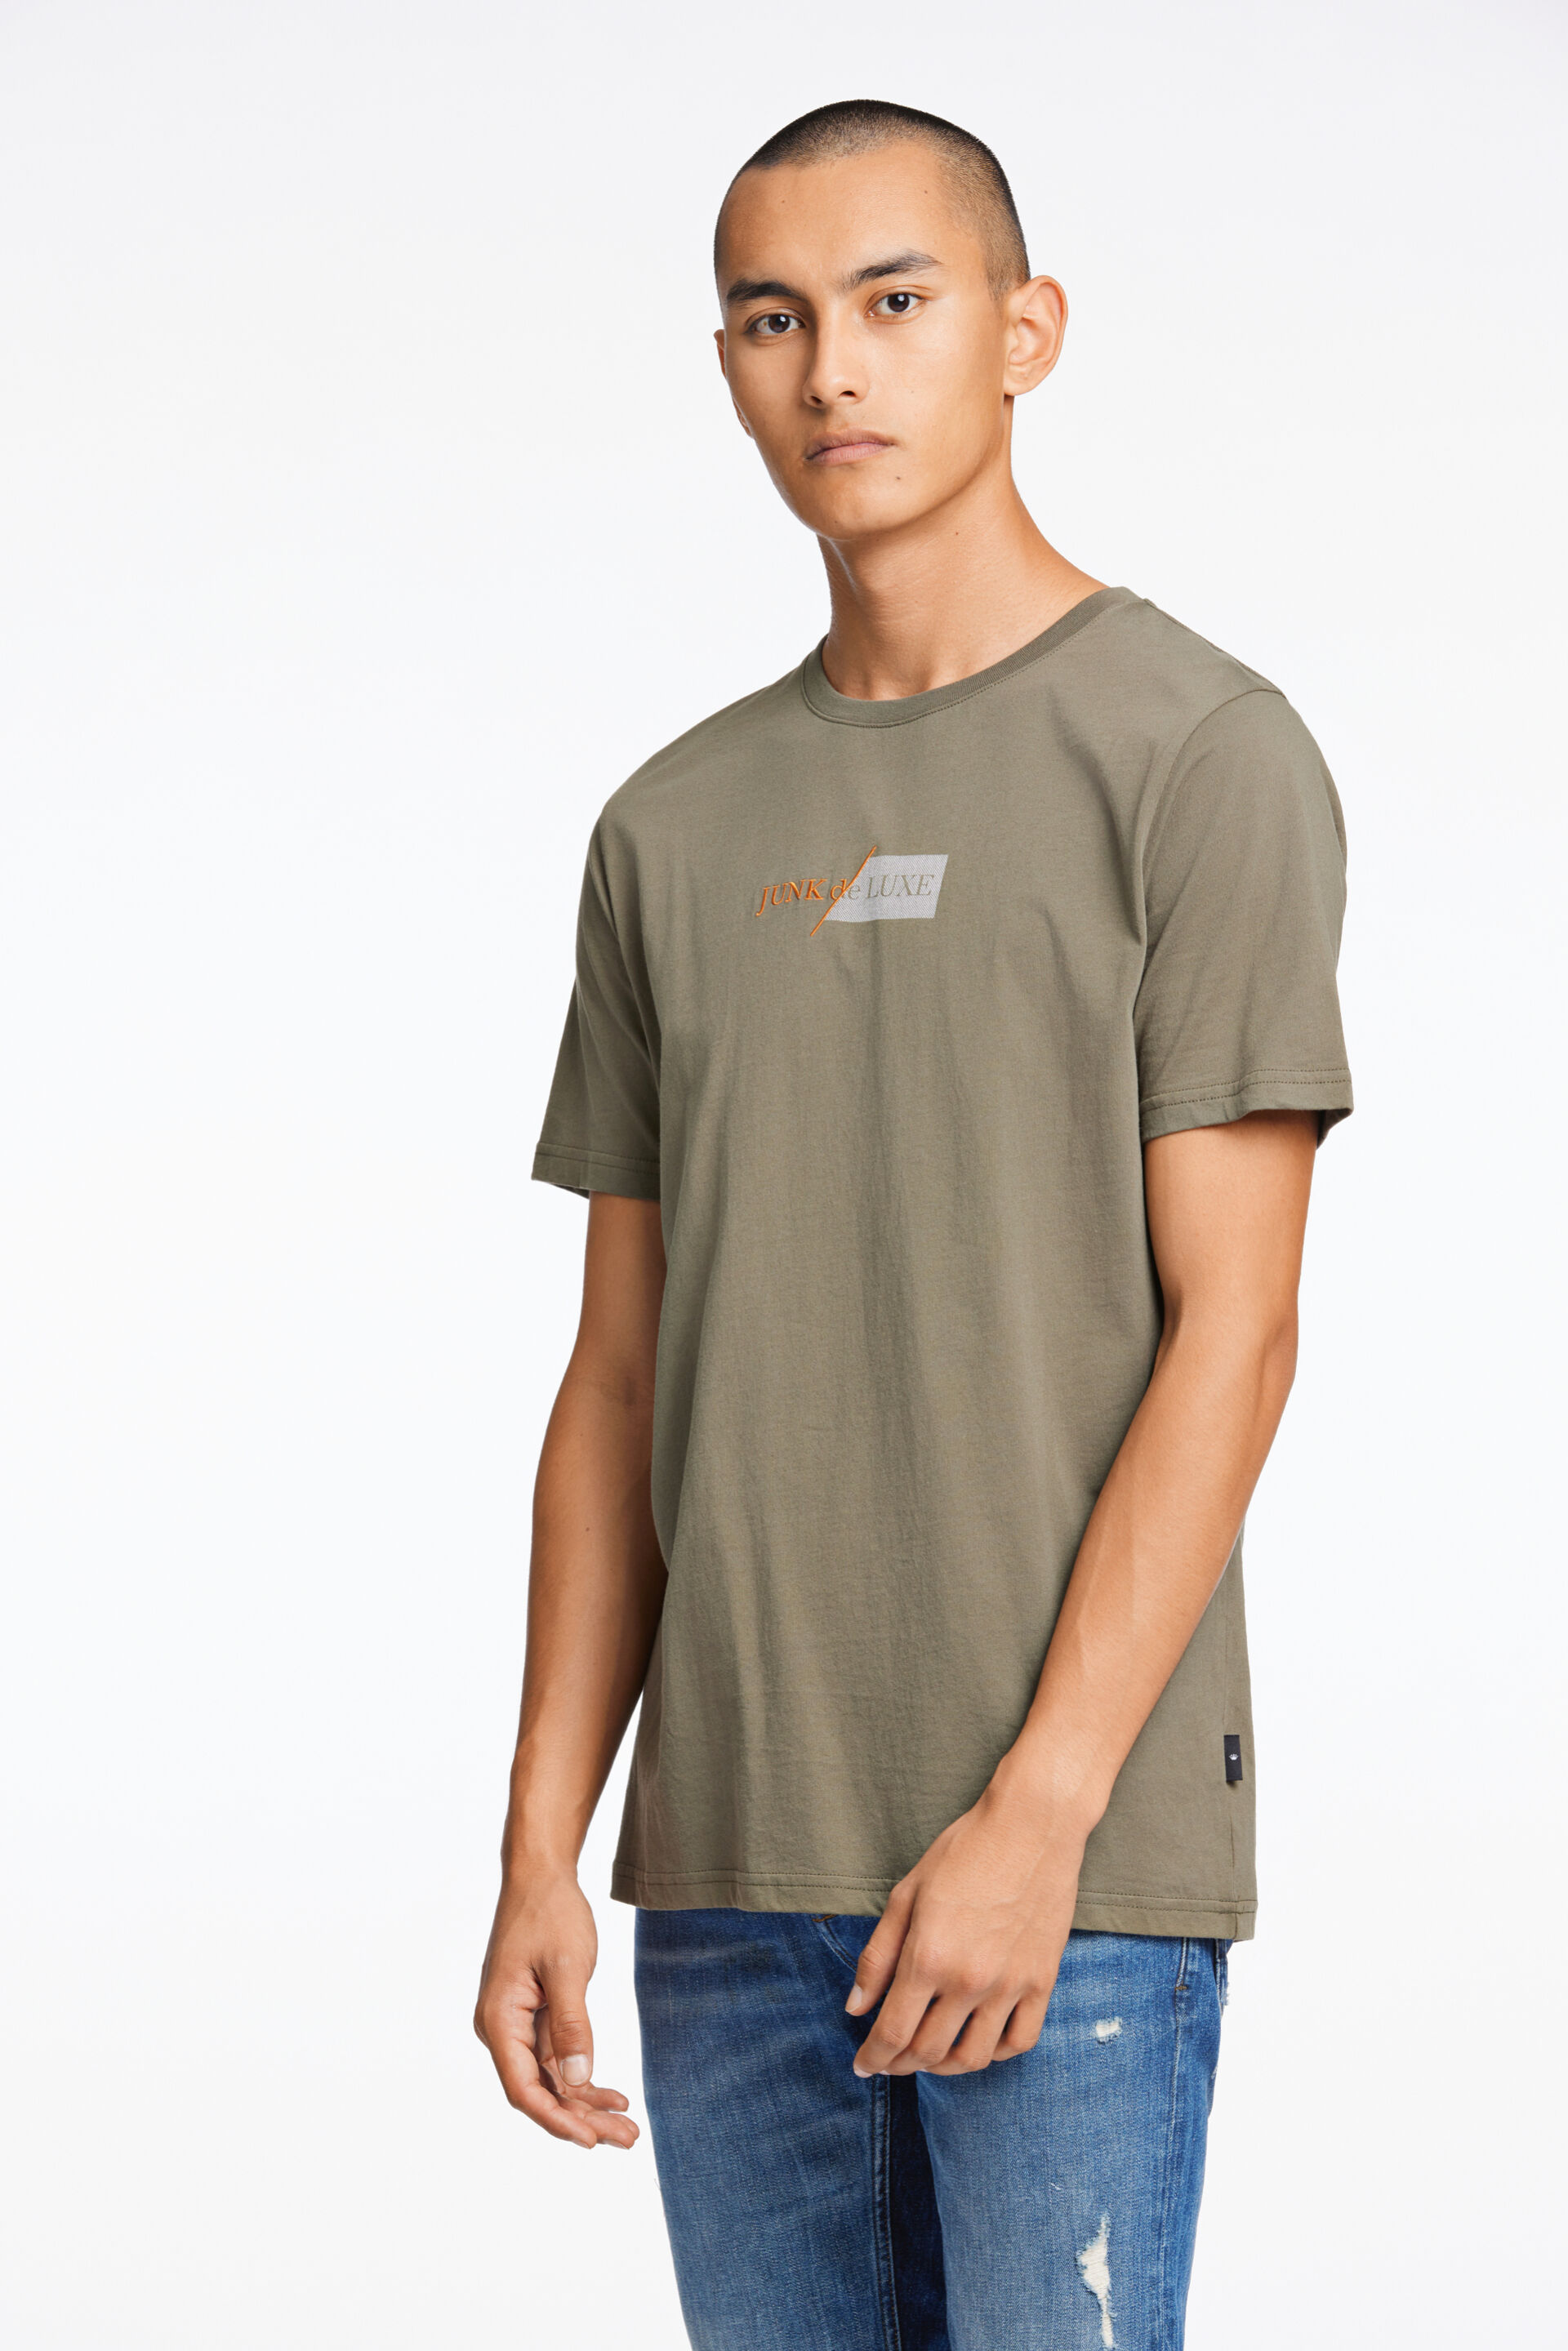 Junk de Luxe  T-shirt 60-455017